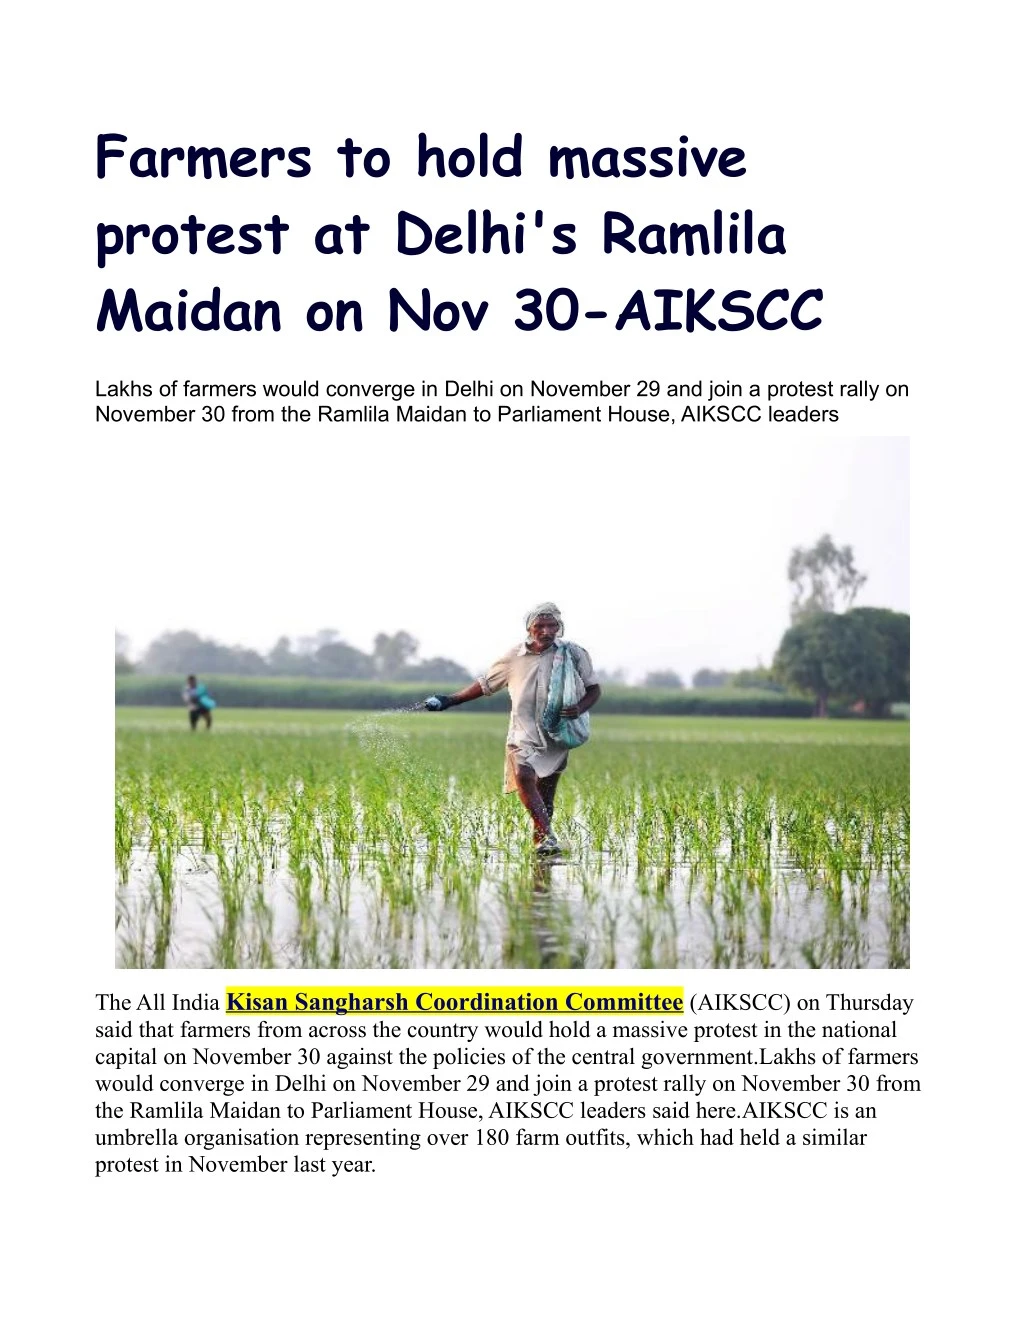 farmers to hold massive protest at delhi